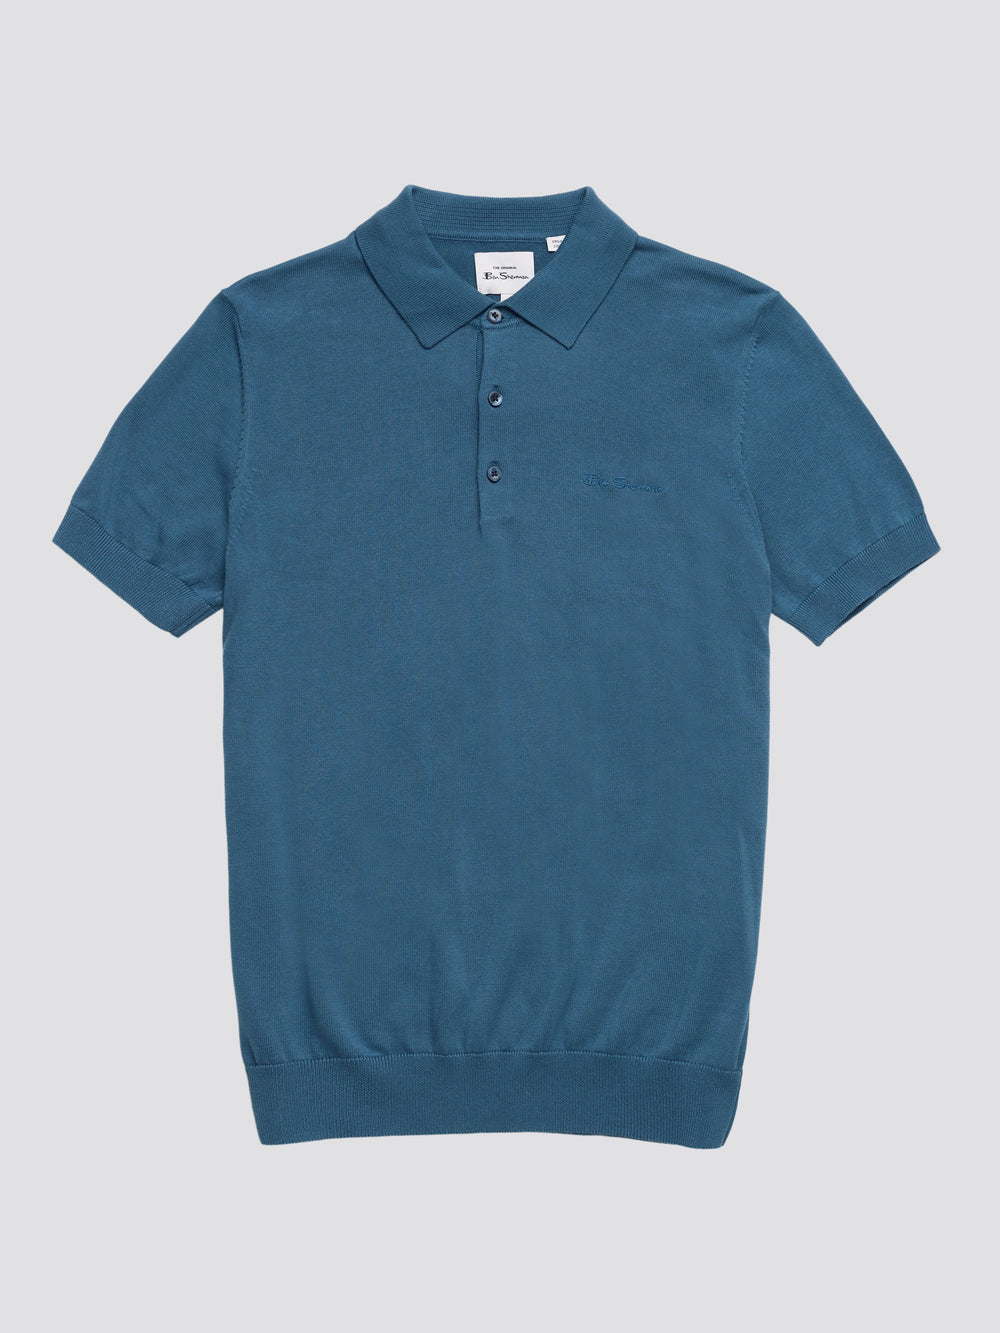 Short-Sleeve Signature Knit Polo - Wedgewood Blue